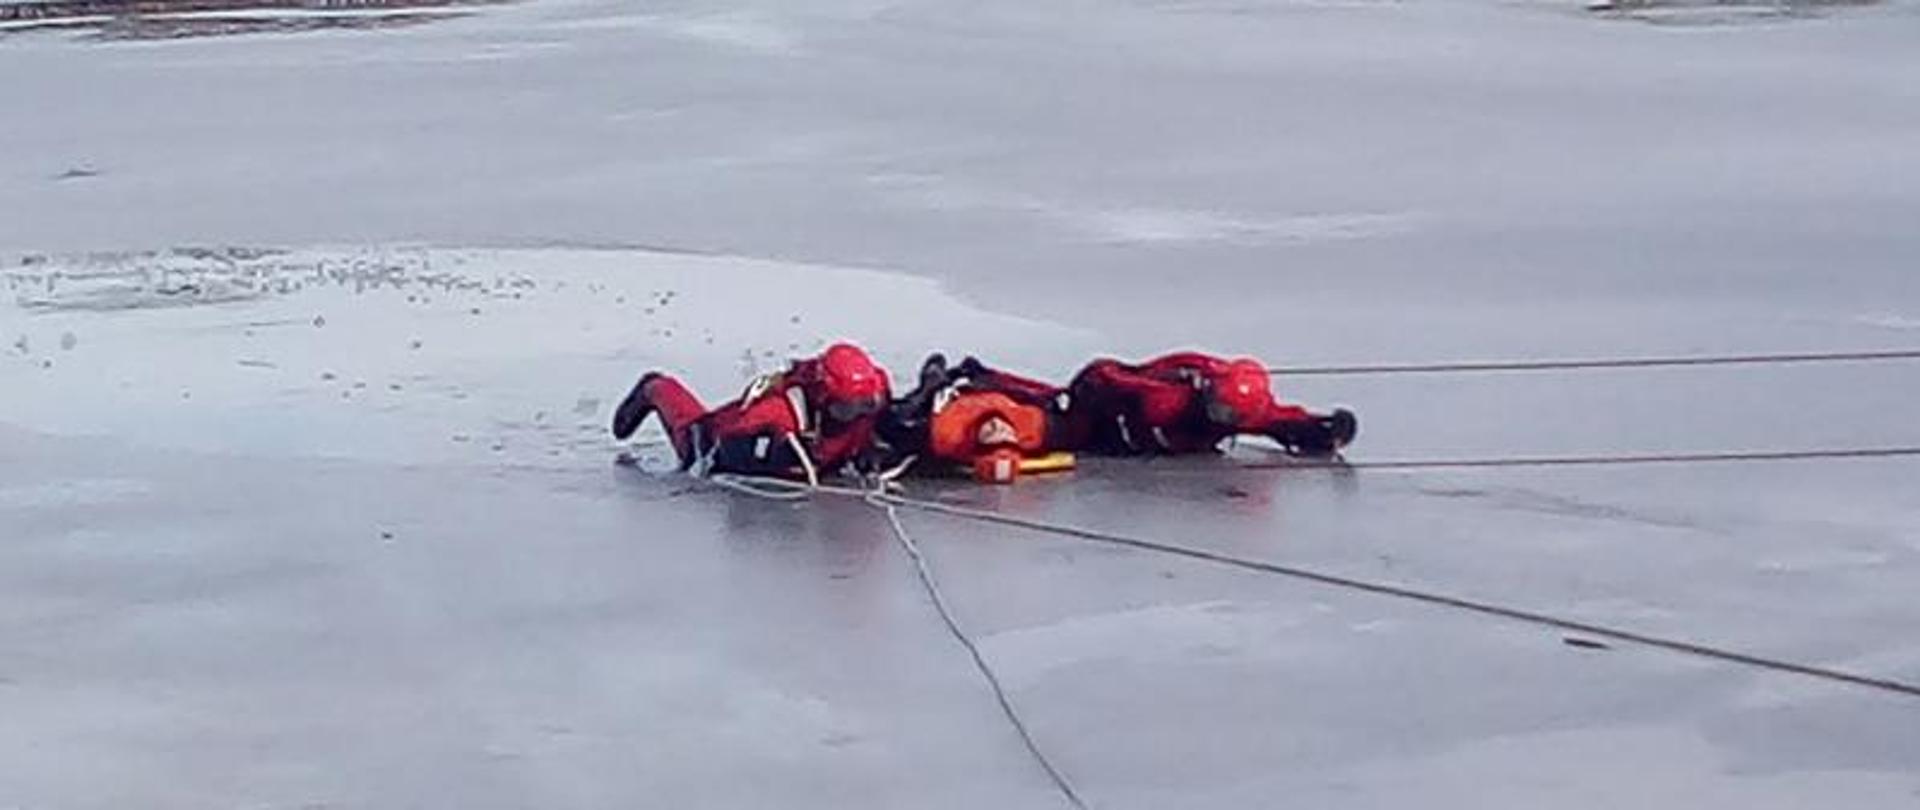 Strażacy holują leżąc poszkodowanego na desce do brzegu.